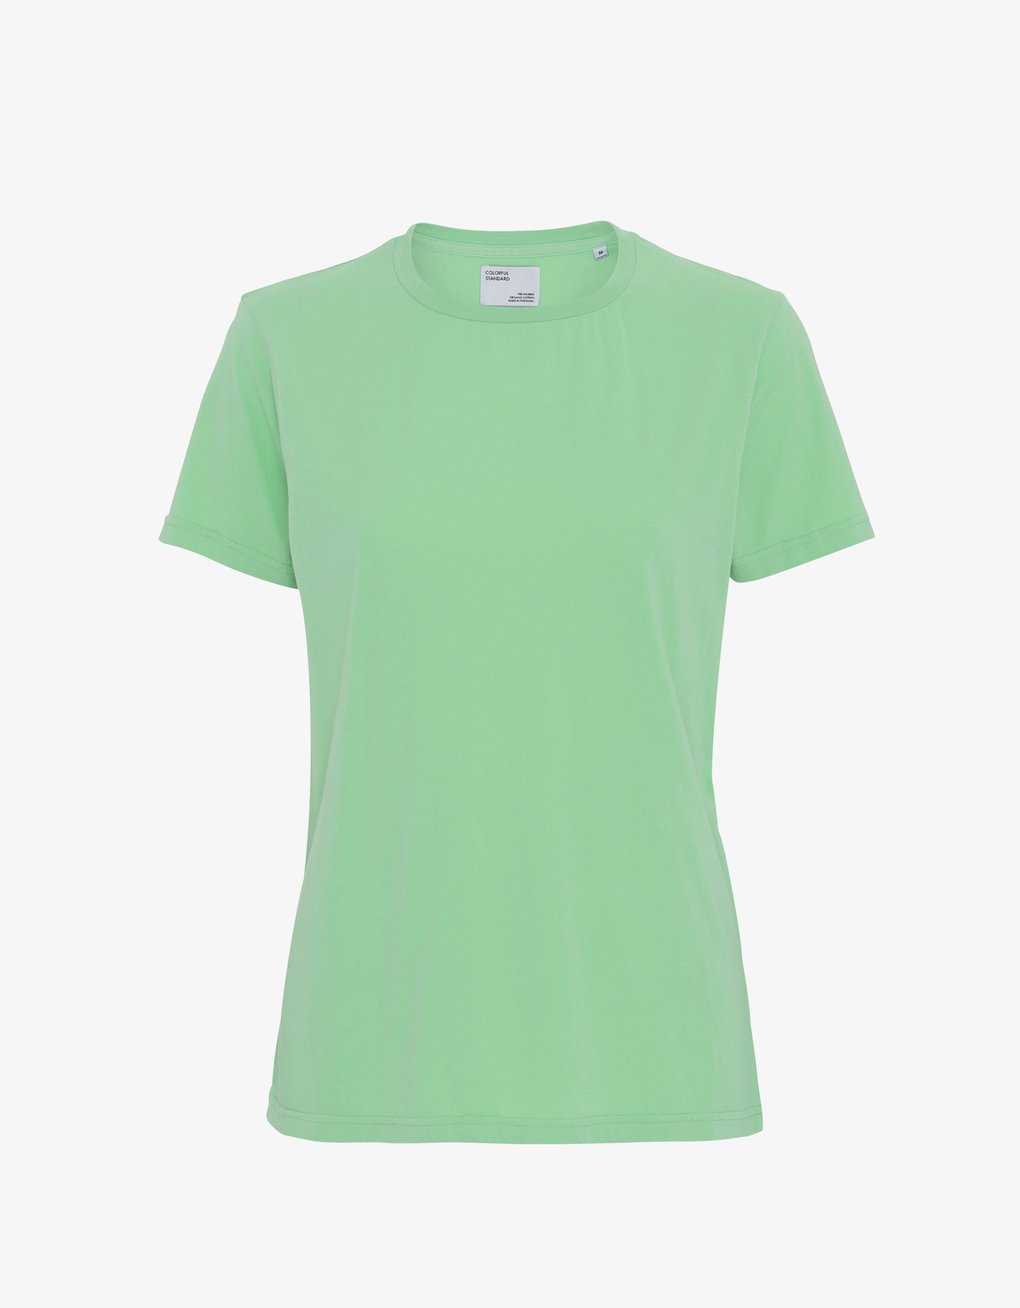 Camiseta Ligera de Mujer Orgánica Verde - ECRU